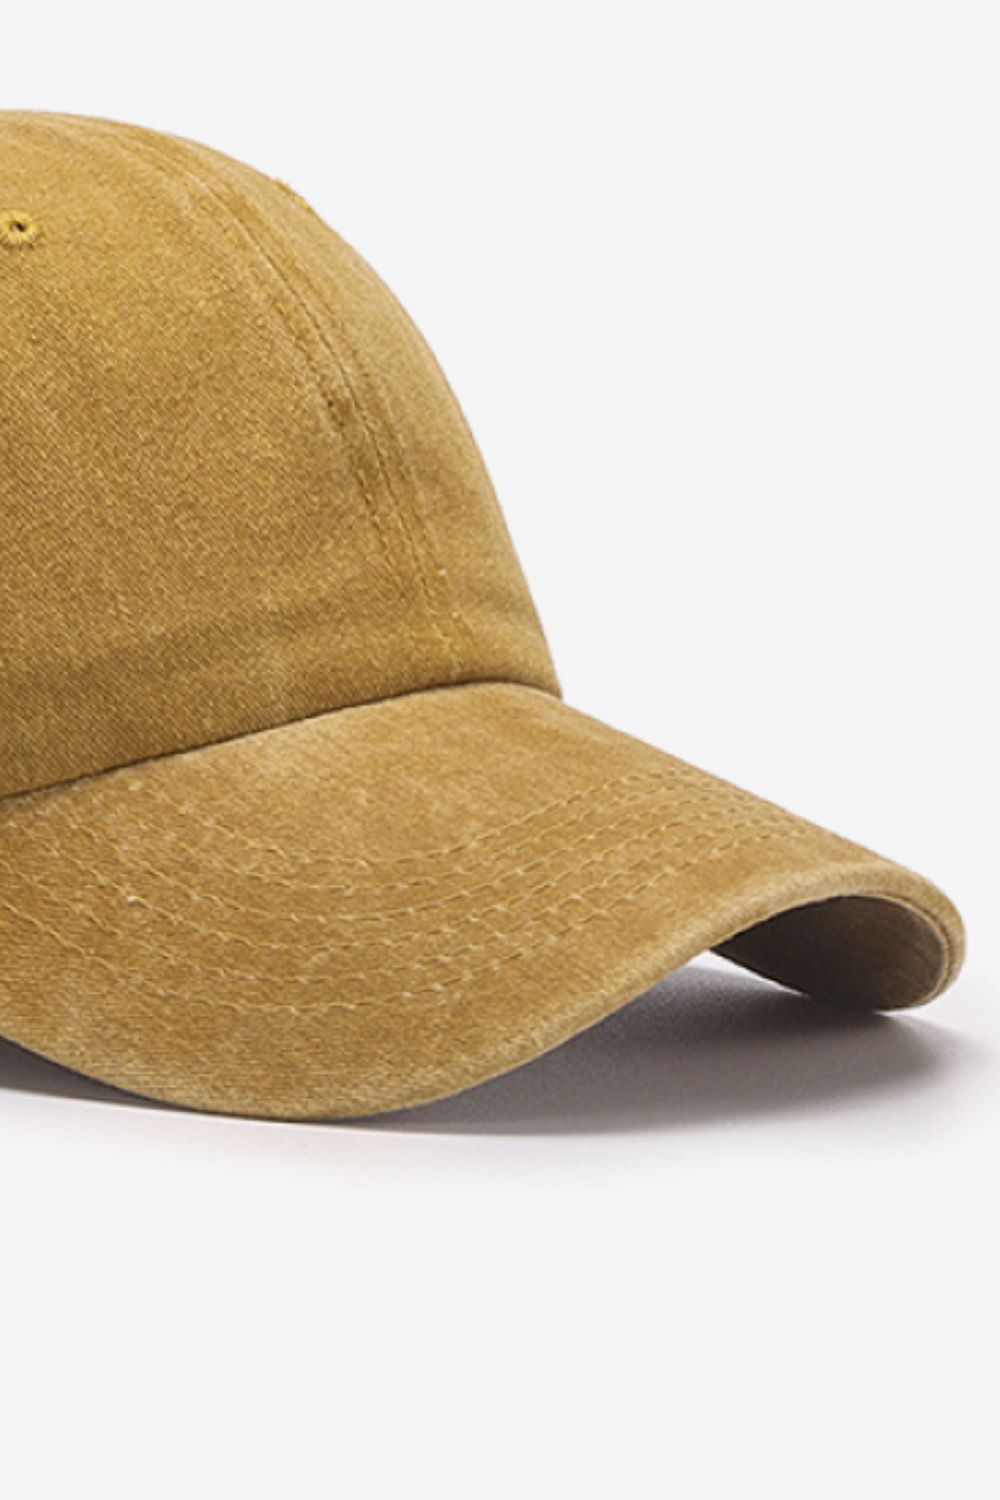 De-stressed Dad Hat | 12 Colors - Nubian Lane Hat Co.